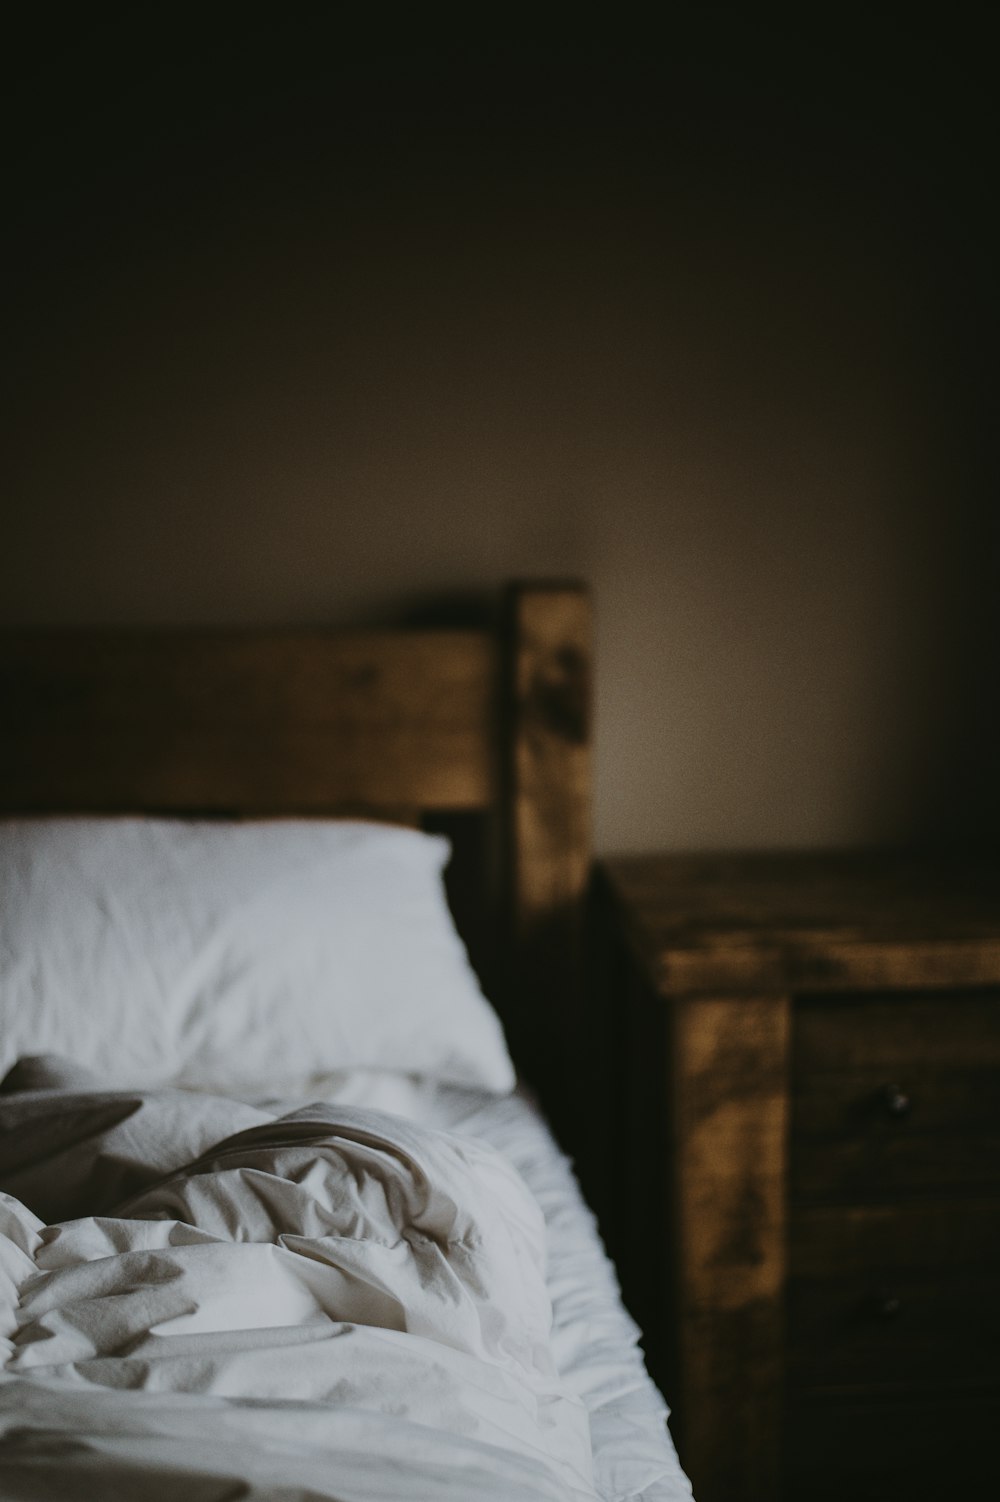 Cojín blanco en la cama cerca de la mesita de noche de madera marrón